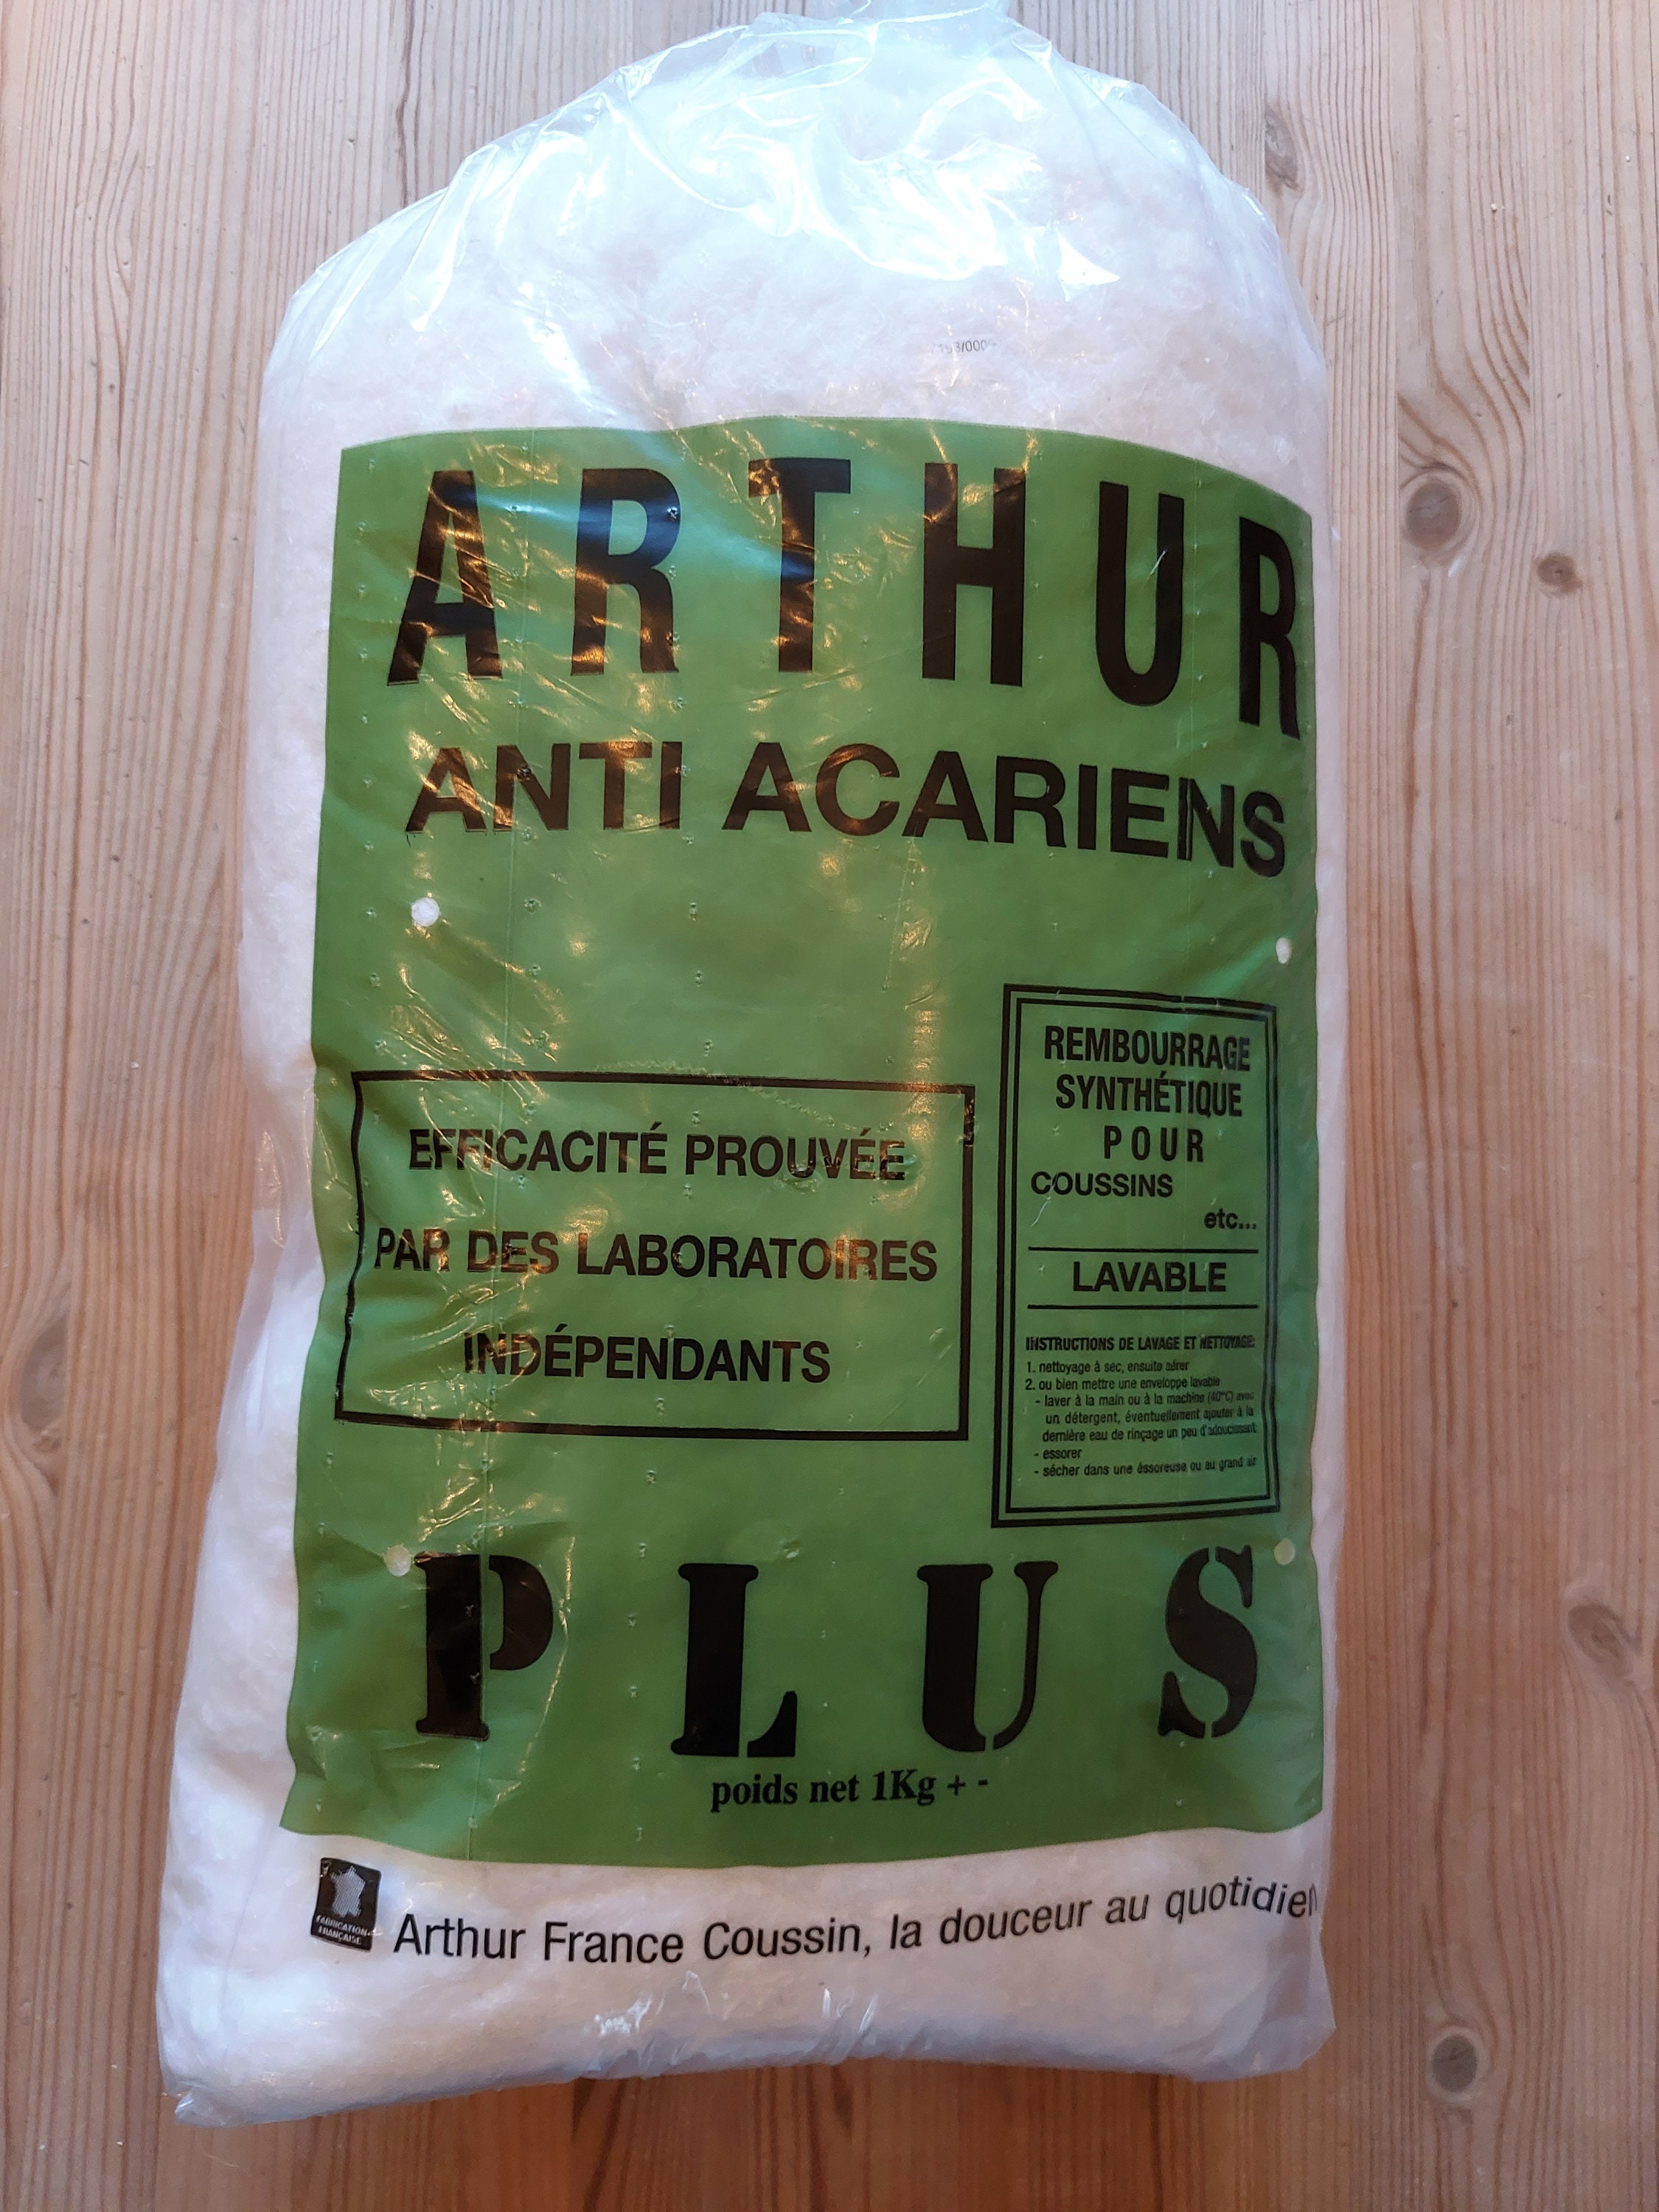 Arthur - ouate 1 kg - anti-acariens